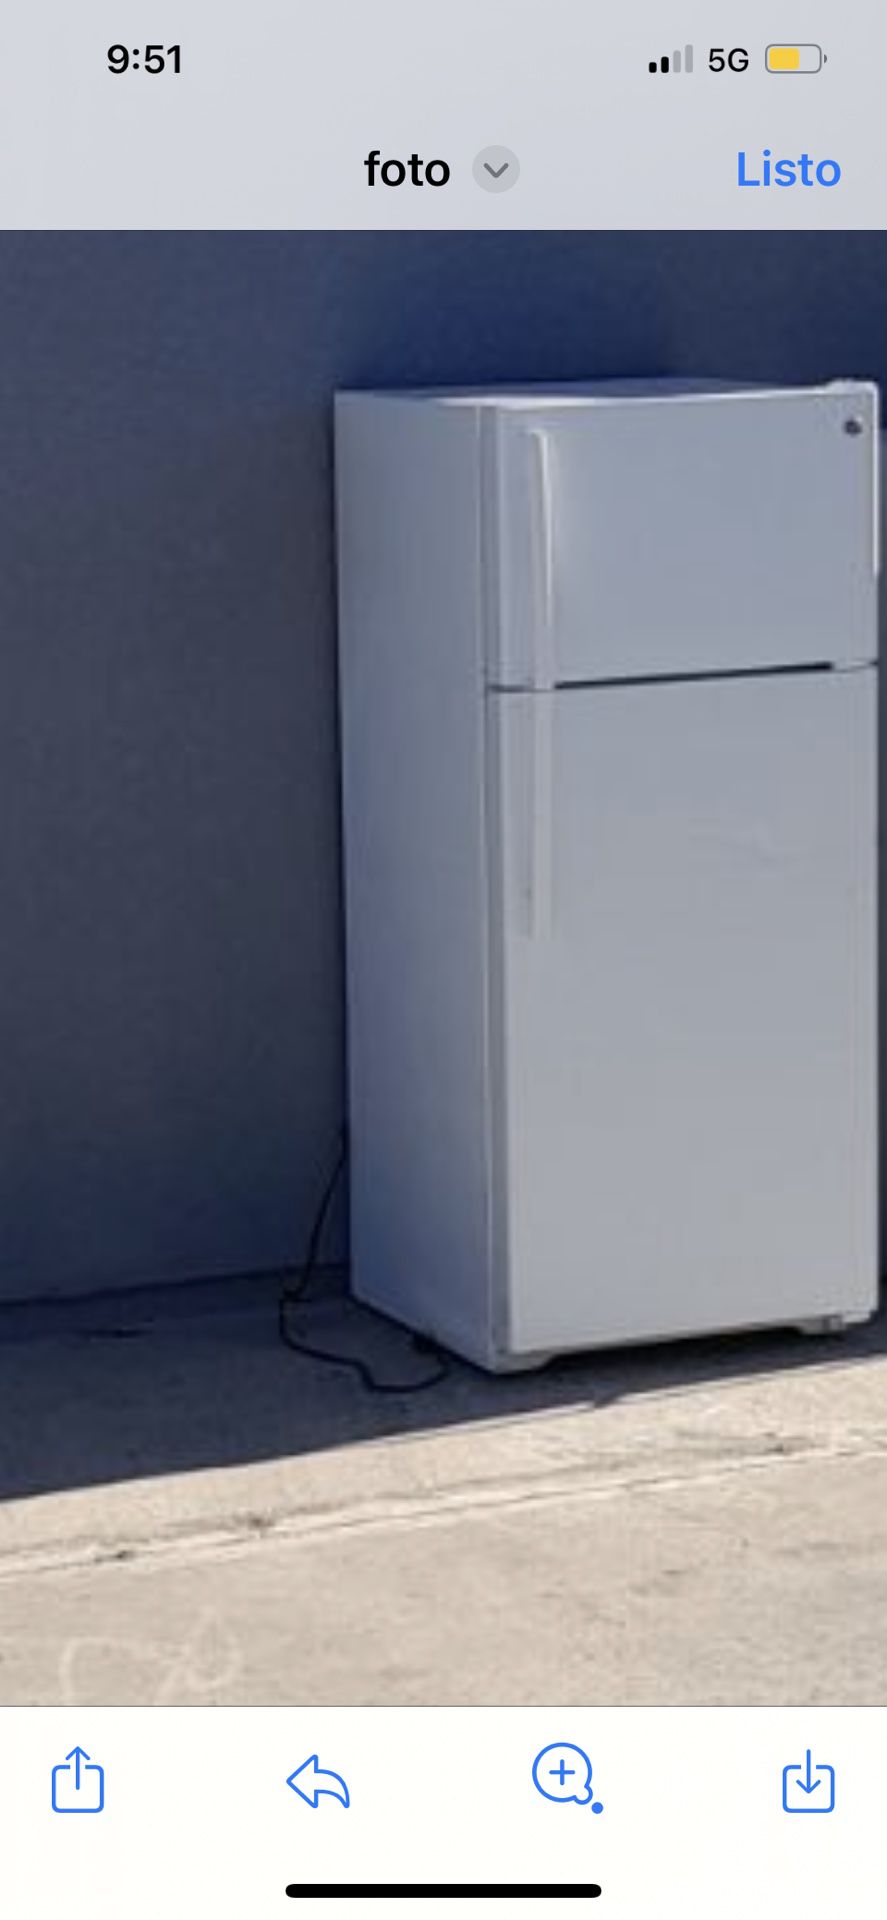 Refrigerator en buen estado Color blanco Y Uno negro 